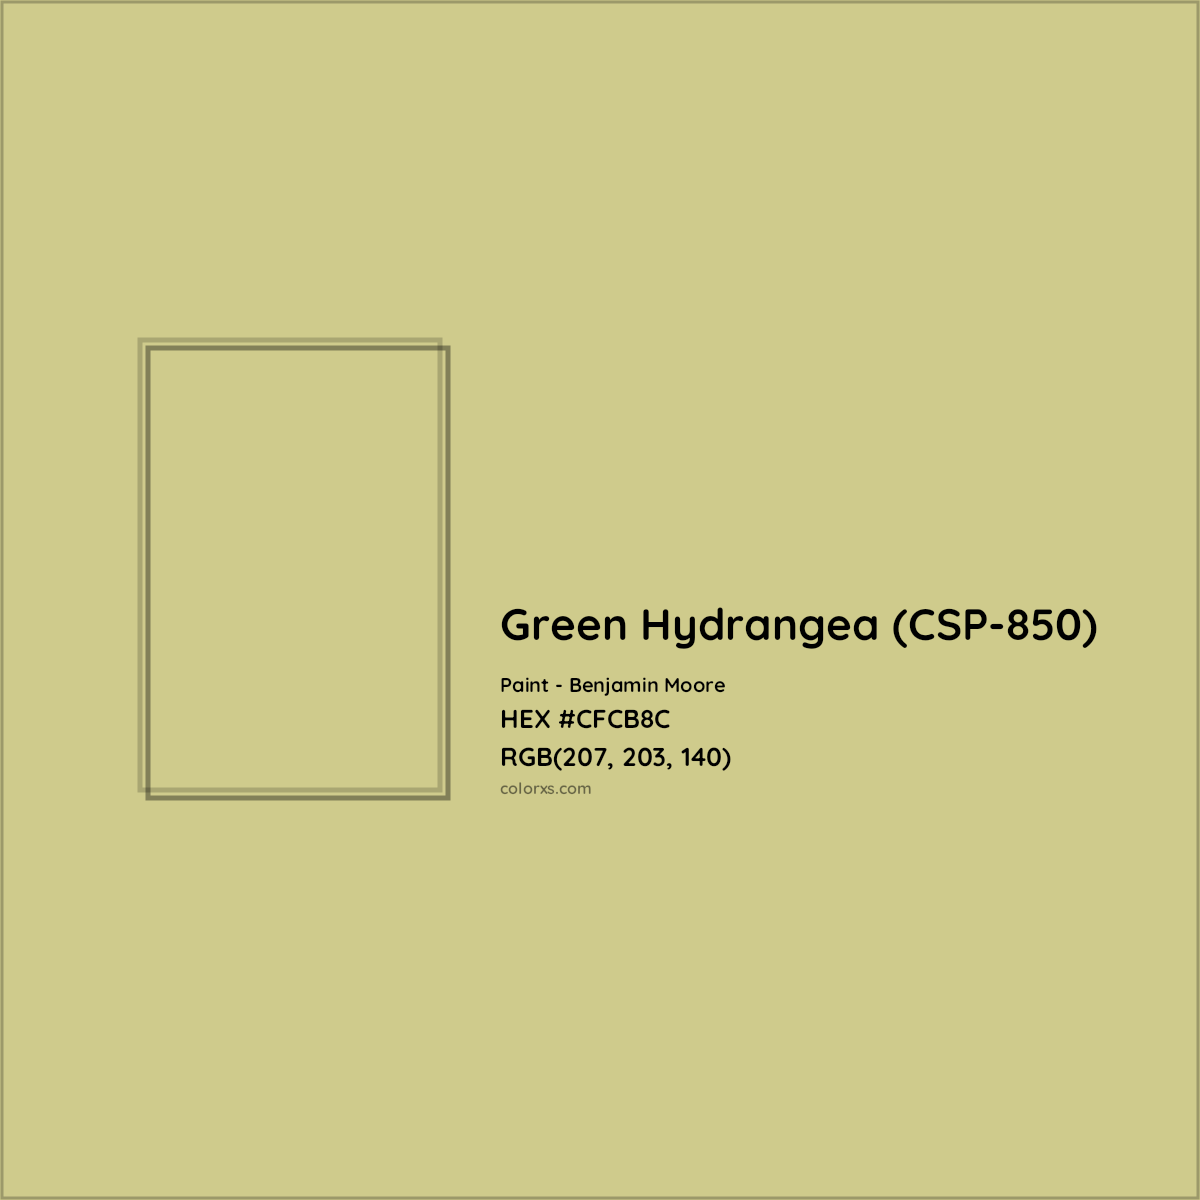 HEX #CFCB8C Green Hydrangea (CSP-850) Paint Benjamin Moore - Color Code